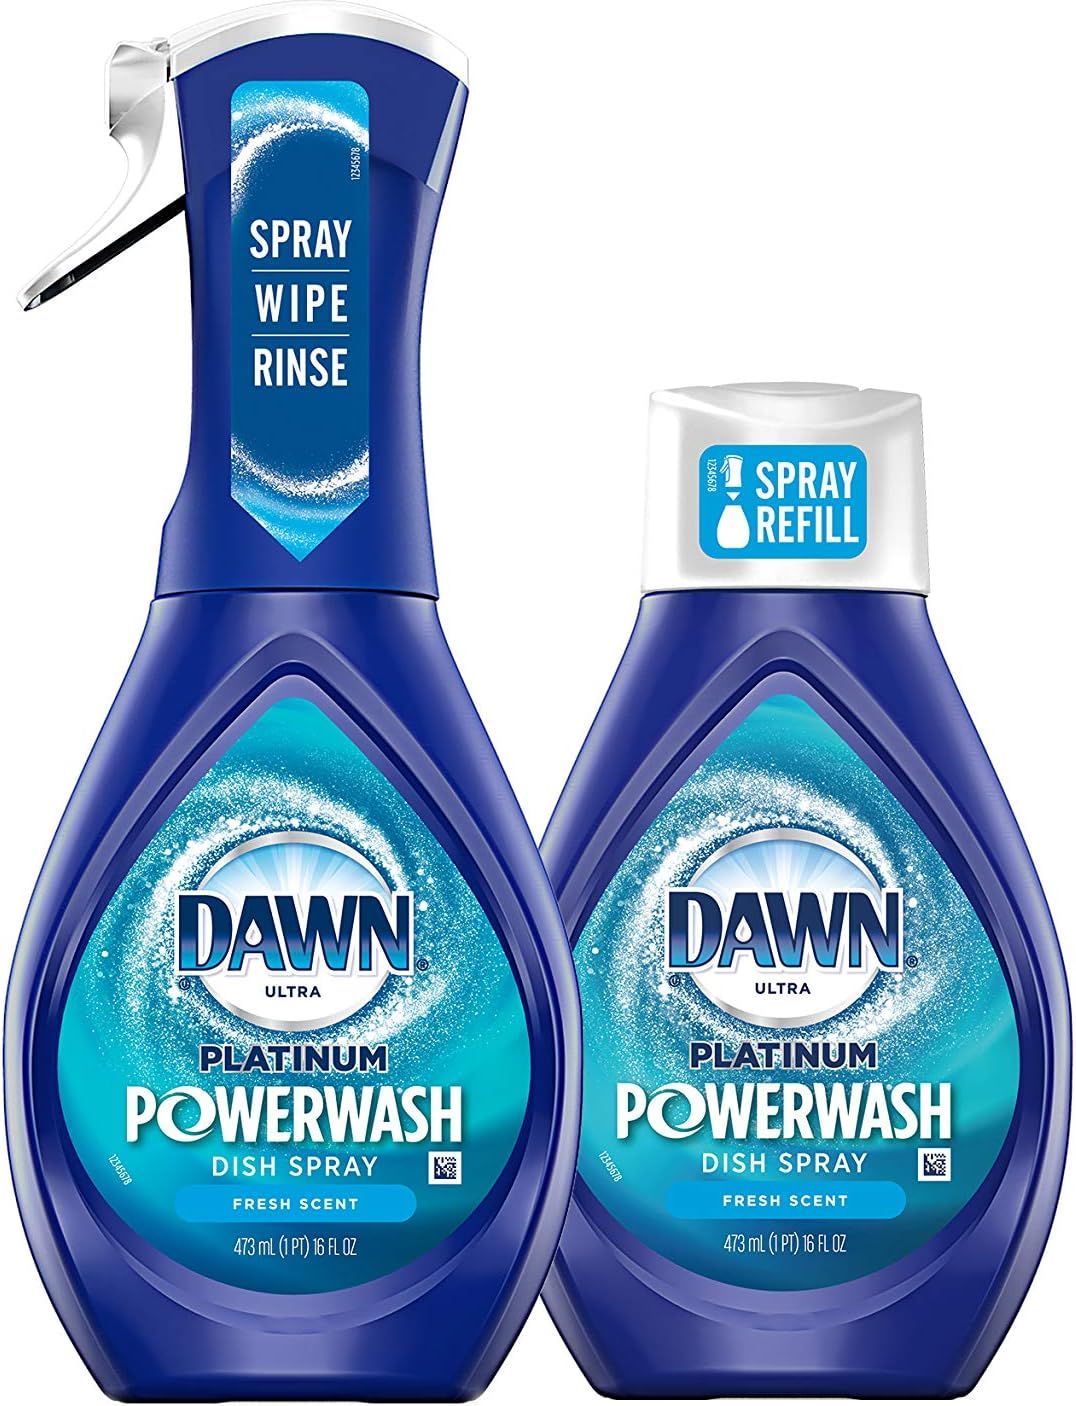 Dawn Platinum Powerwash Dish Spray Starter Kit, Dish Soap, Fresh Scent Bundle, 1 Starter Kit plus... | Amazon (US)